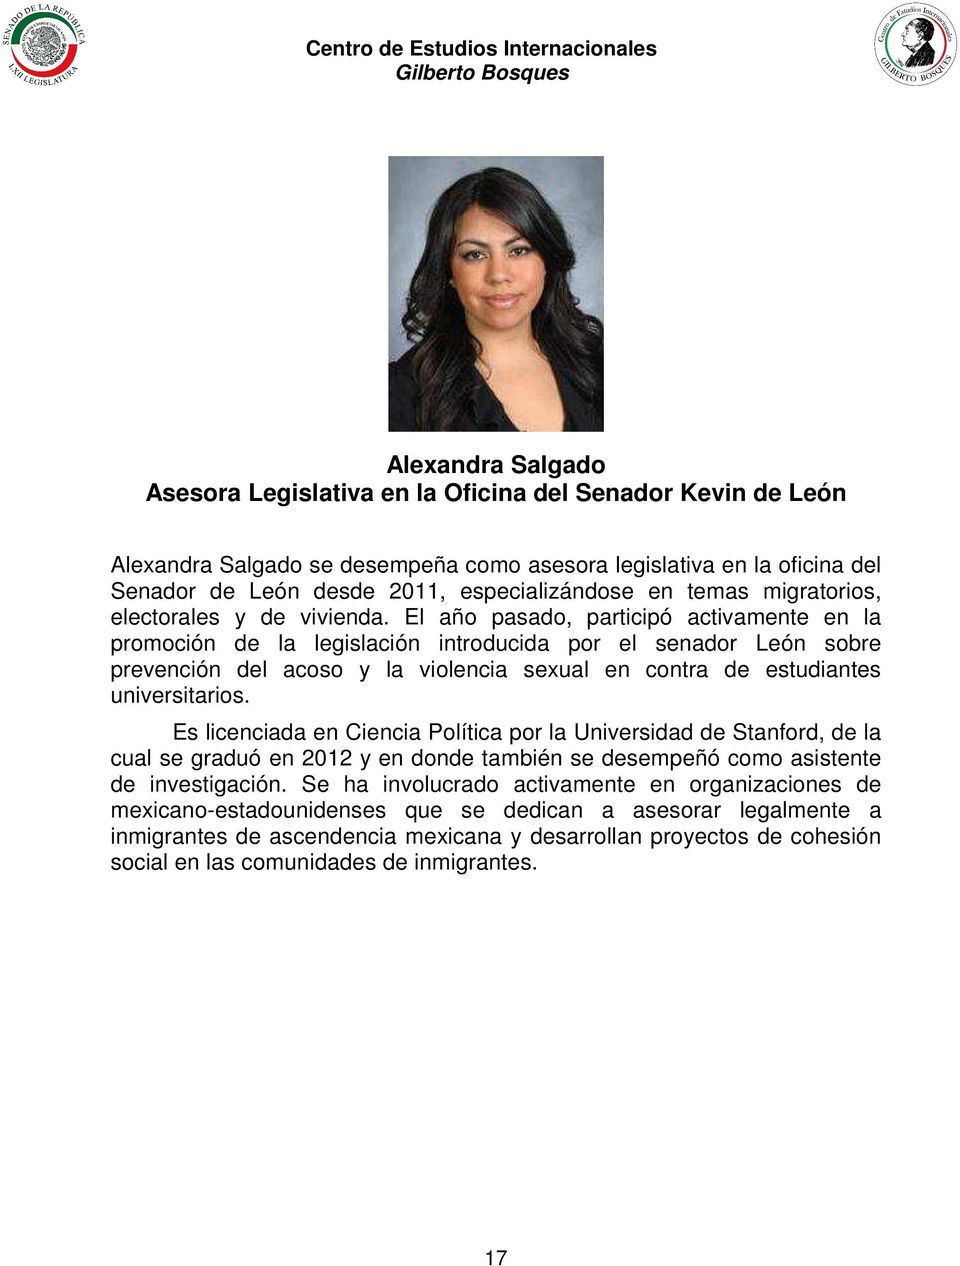 El año pasado, participó activamente en la promoción de la legislación introducida por el senador León sobre prevención del acoso y la violencia sexual en contra de estudiantes universitarios.